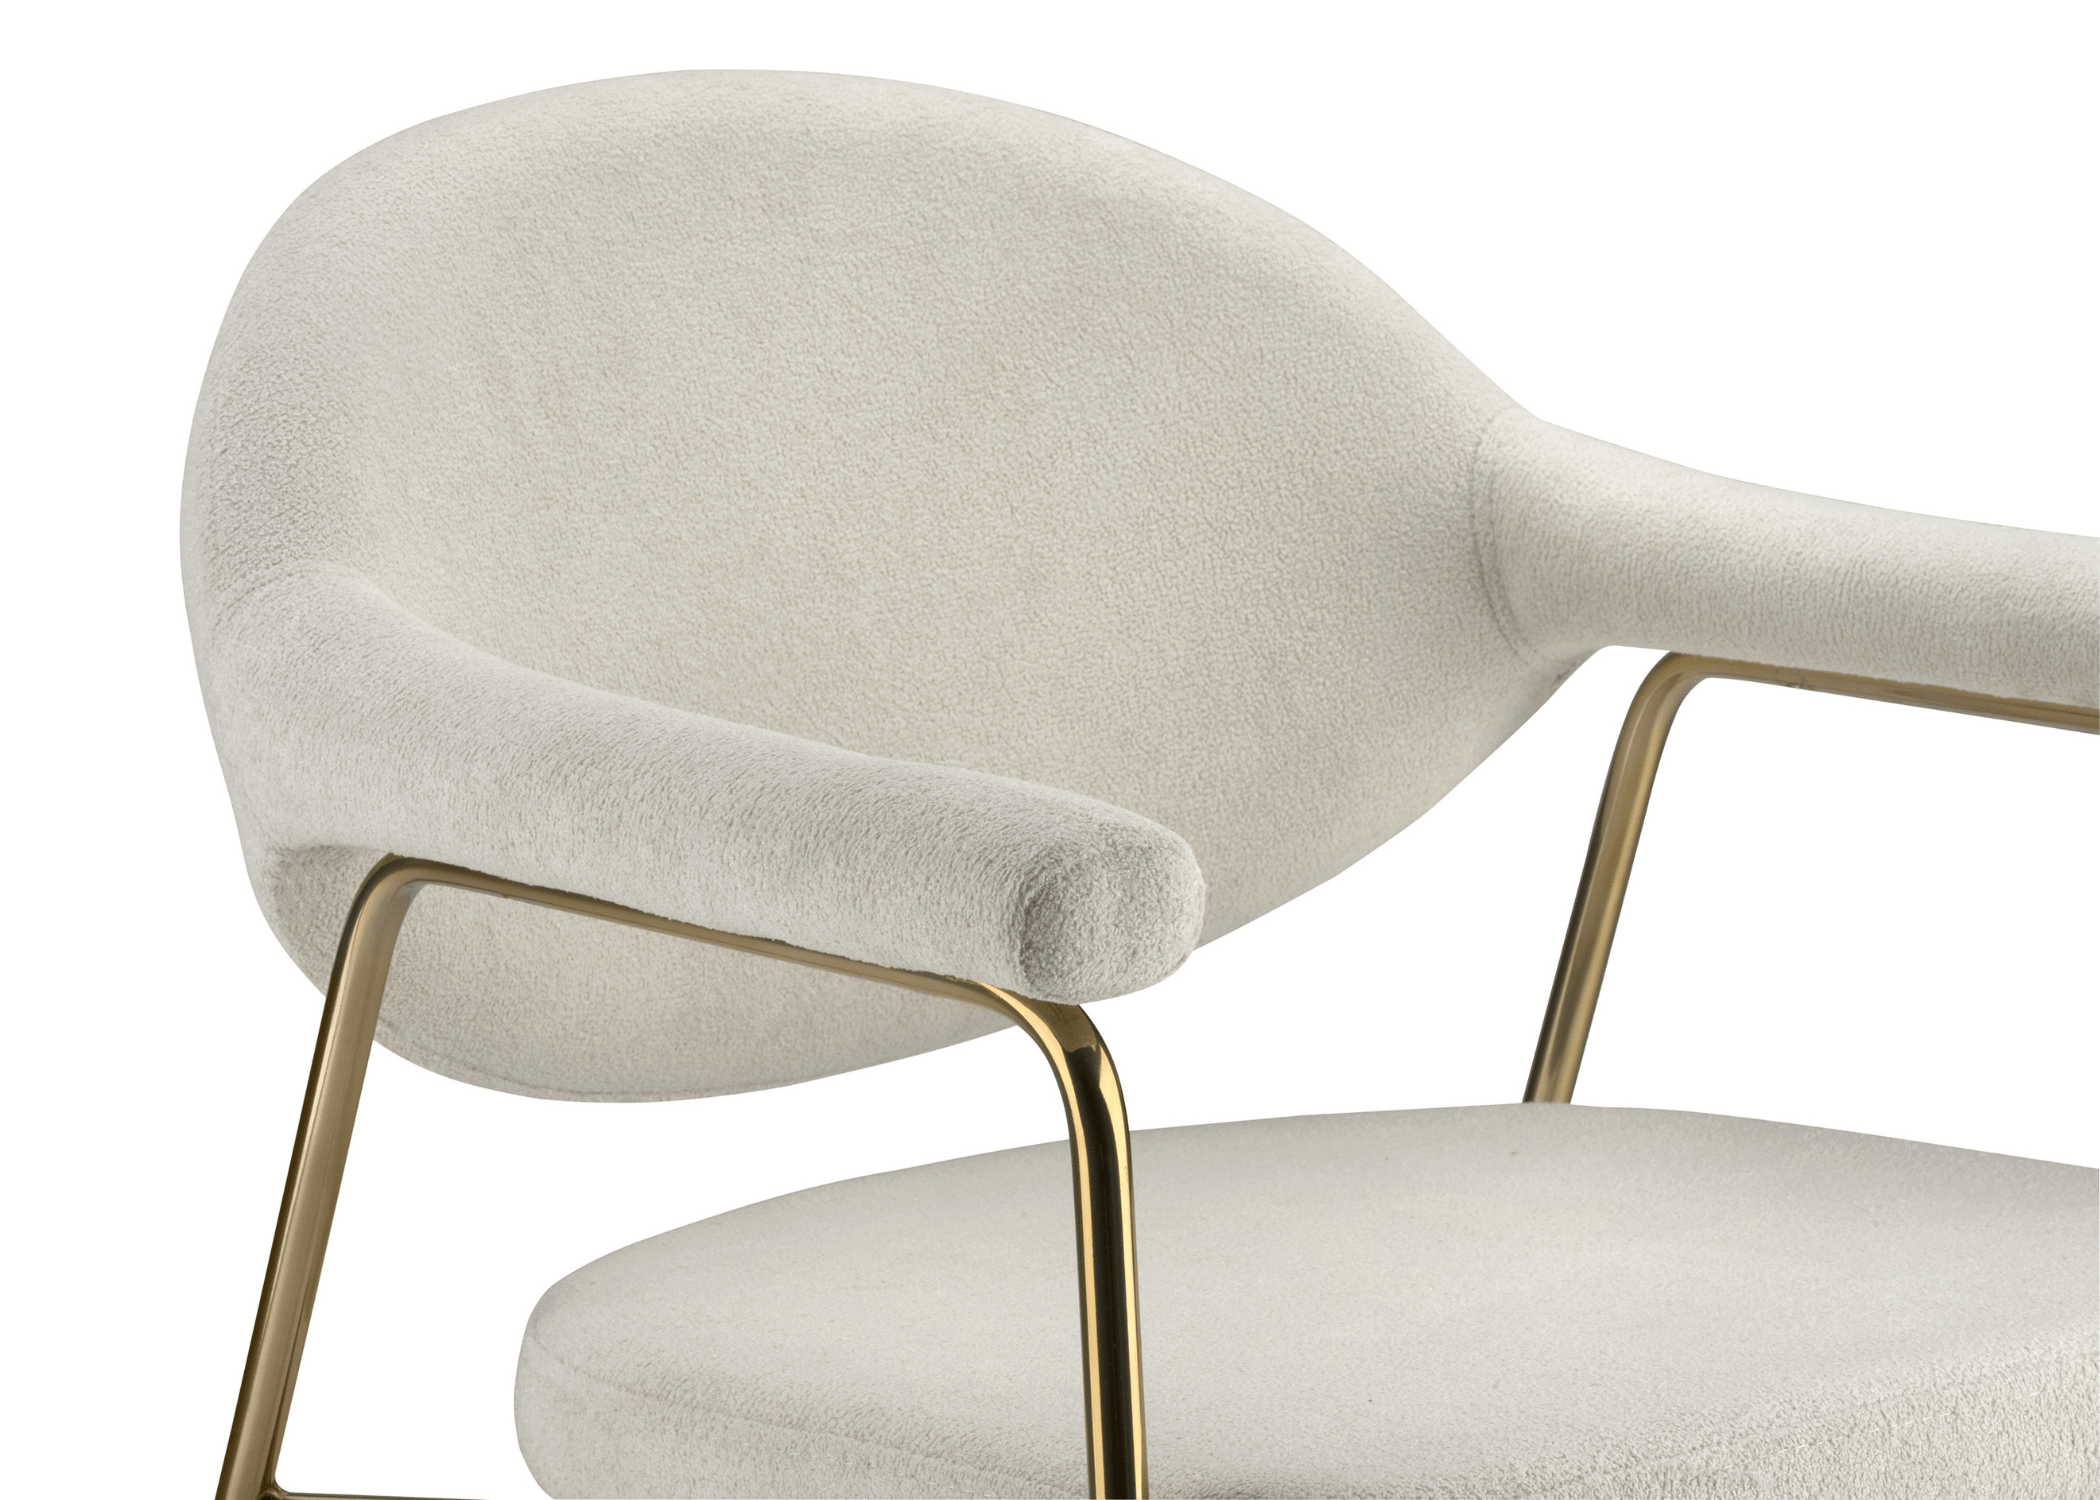 Cadeira Charm: símbolo de estilo e qualidade para salas de estar ou escritórios.